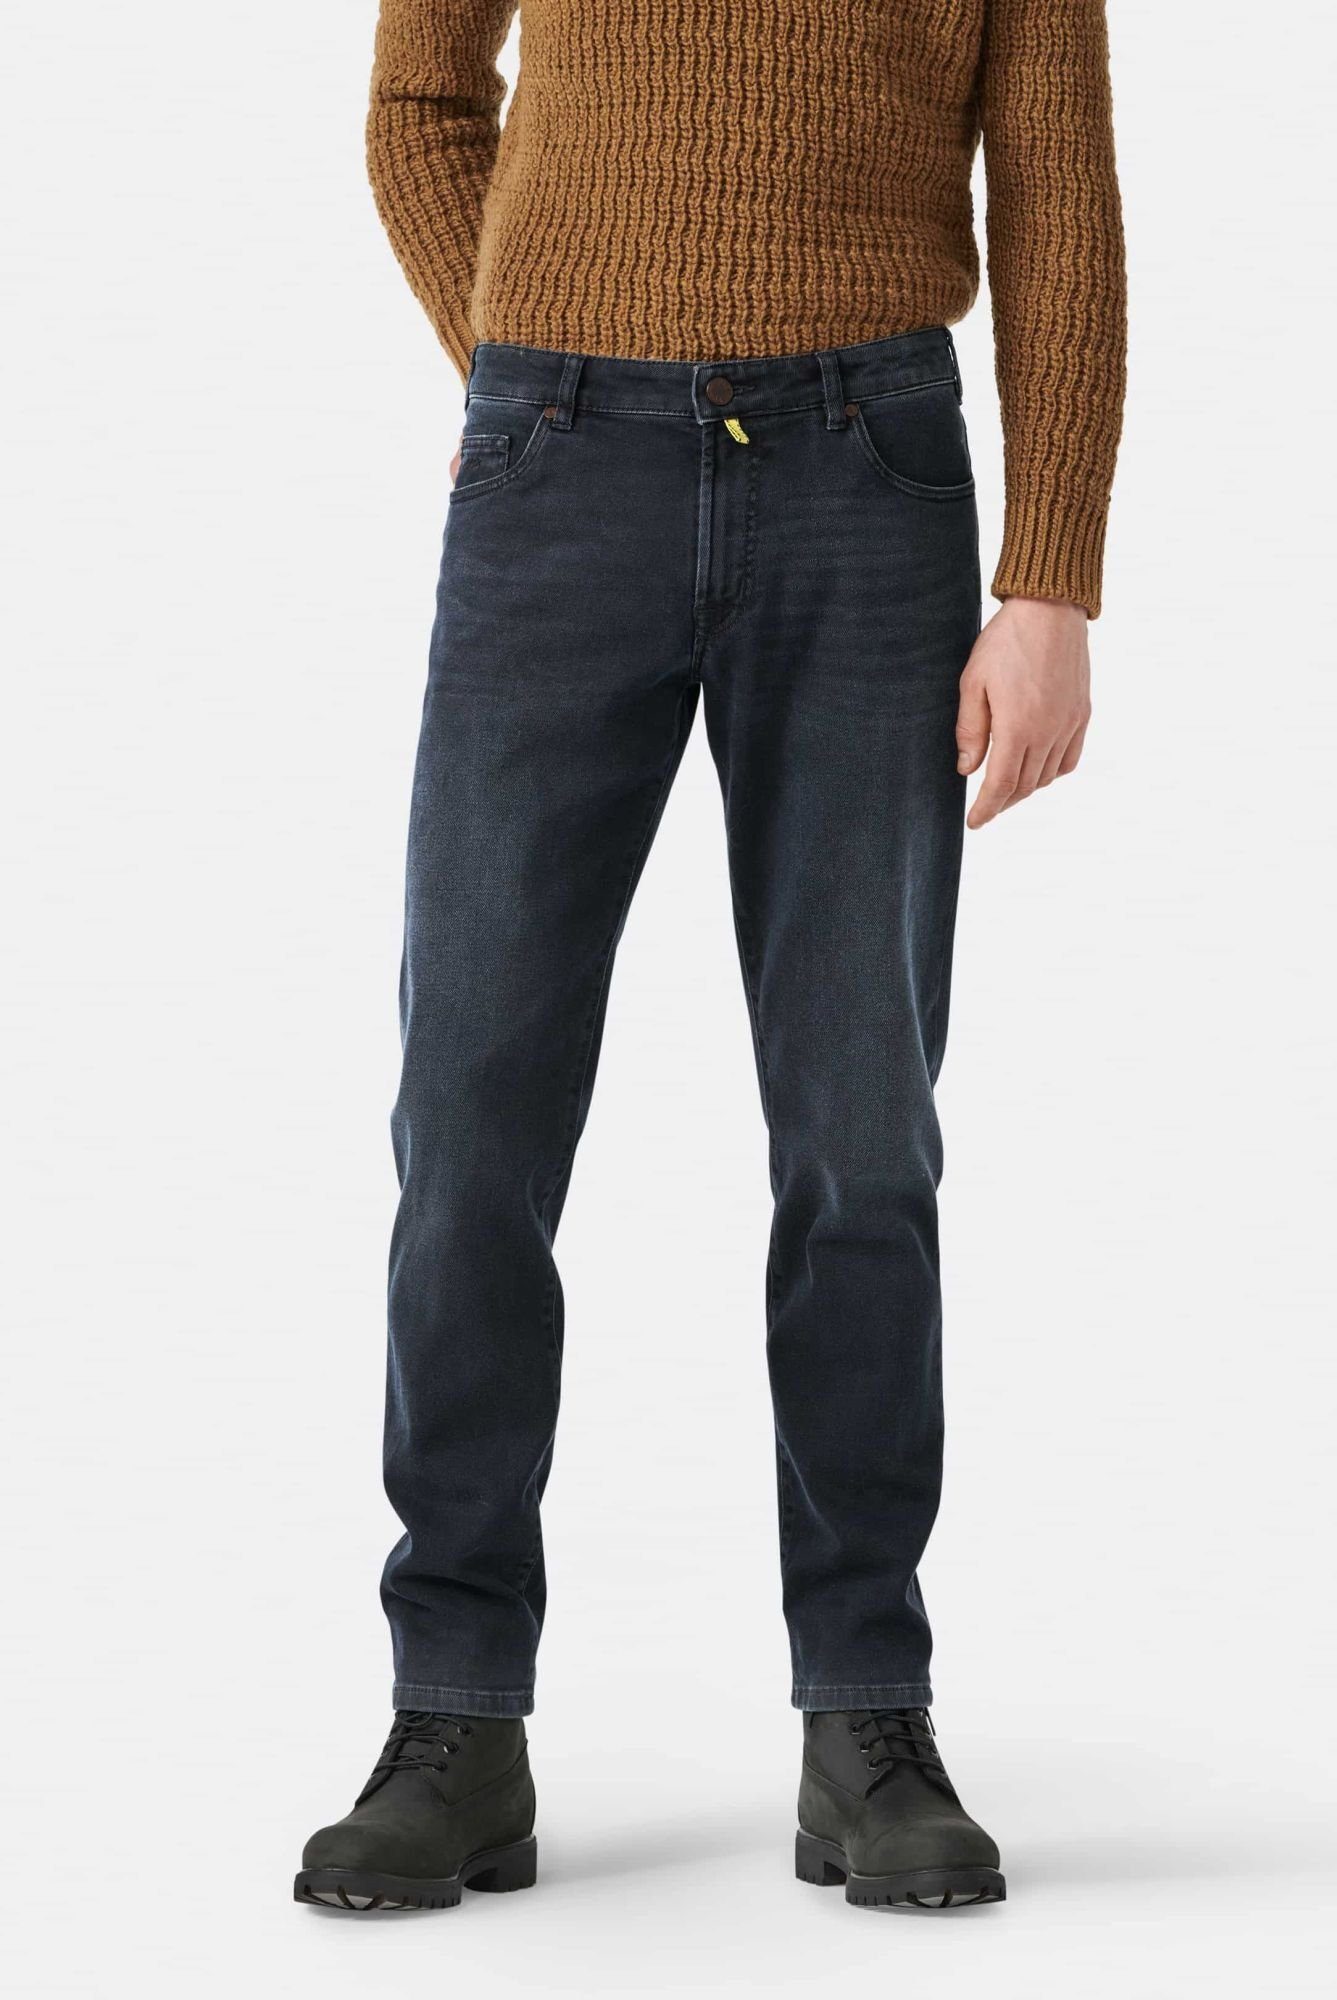 Pocket, mit 5-Pocket-Jeans Stretch-Anteil MMX und Schnitt Phoenix Moderner Five